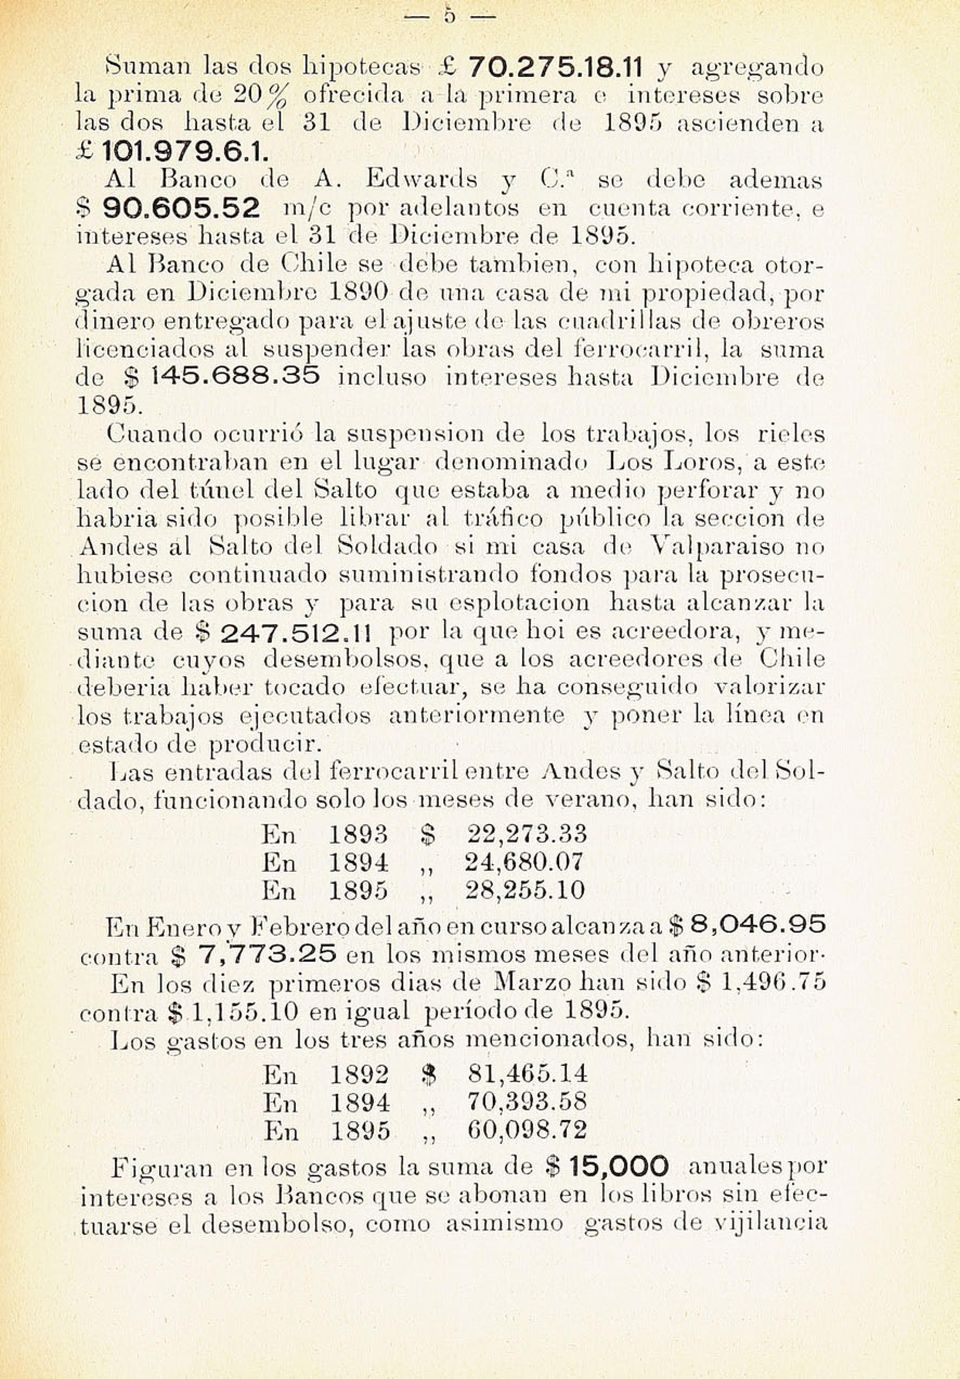 Al Banco de Chile se debe también, eon hipoteca otor gada en Diciembre 1890 de una casa de mi propiedad, por dinero entregado para el ajuste do las cuadrillas de obreros licenciados al suspender las